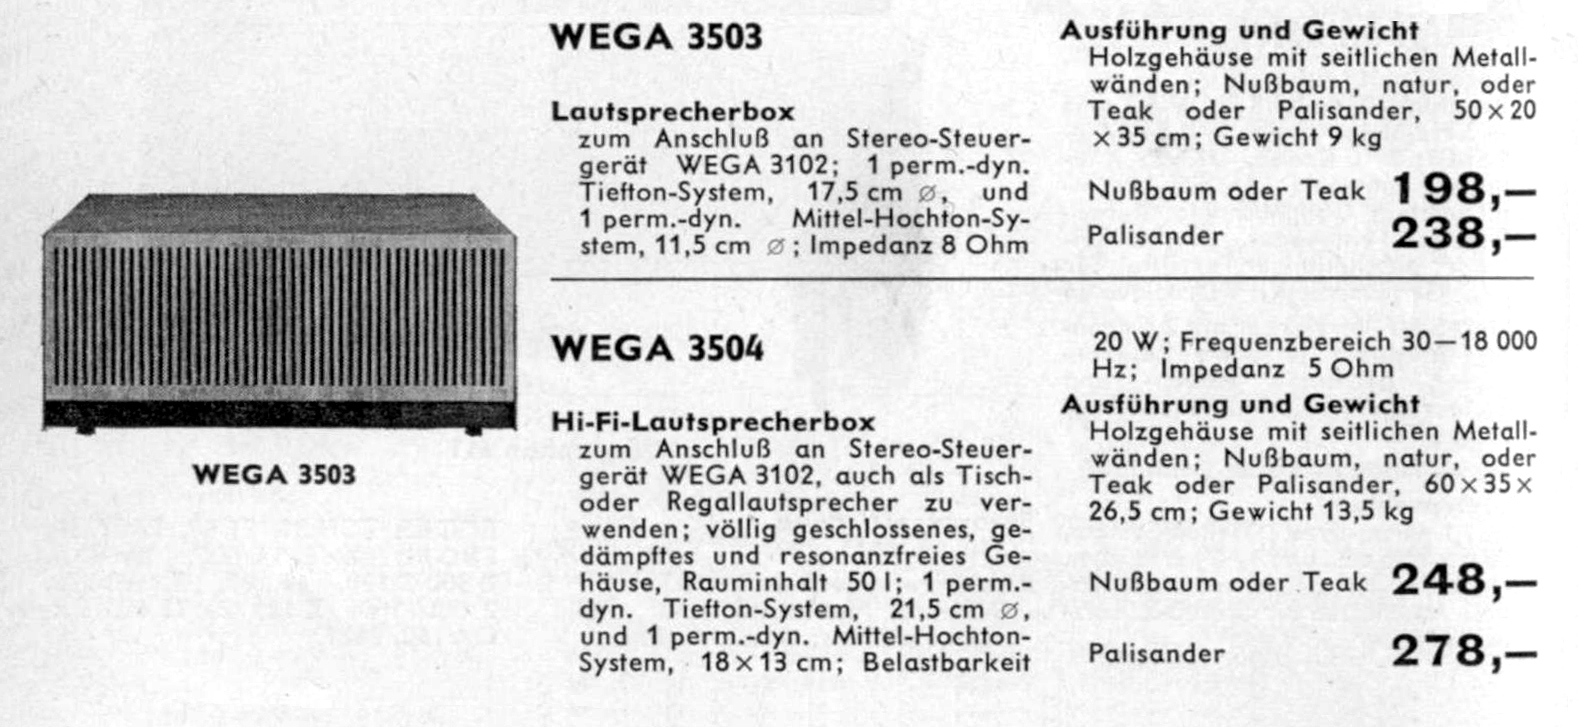 Wega 3503-3504-Daten-1965.jpg